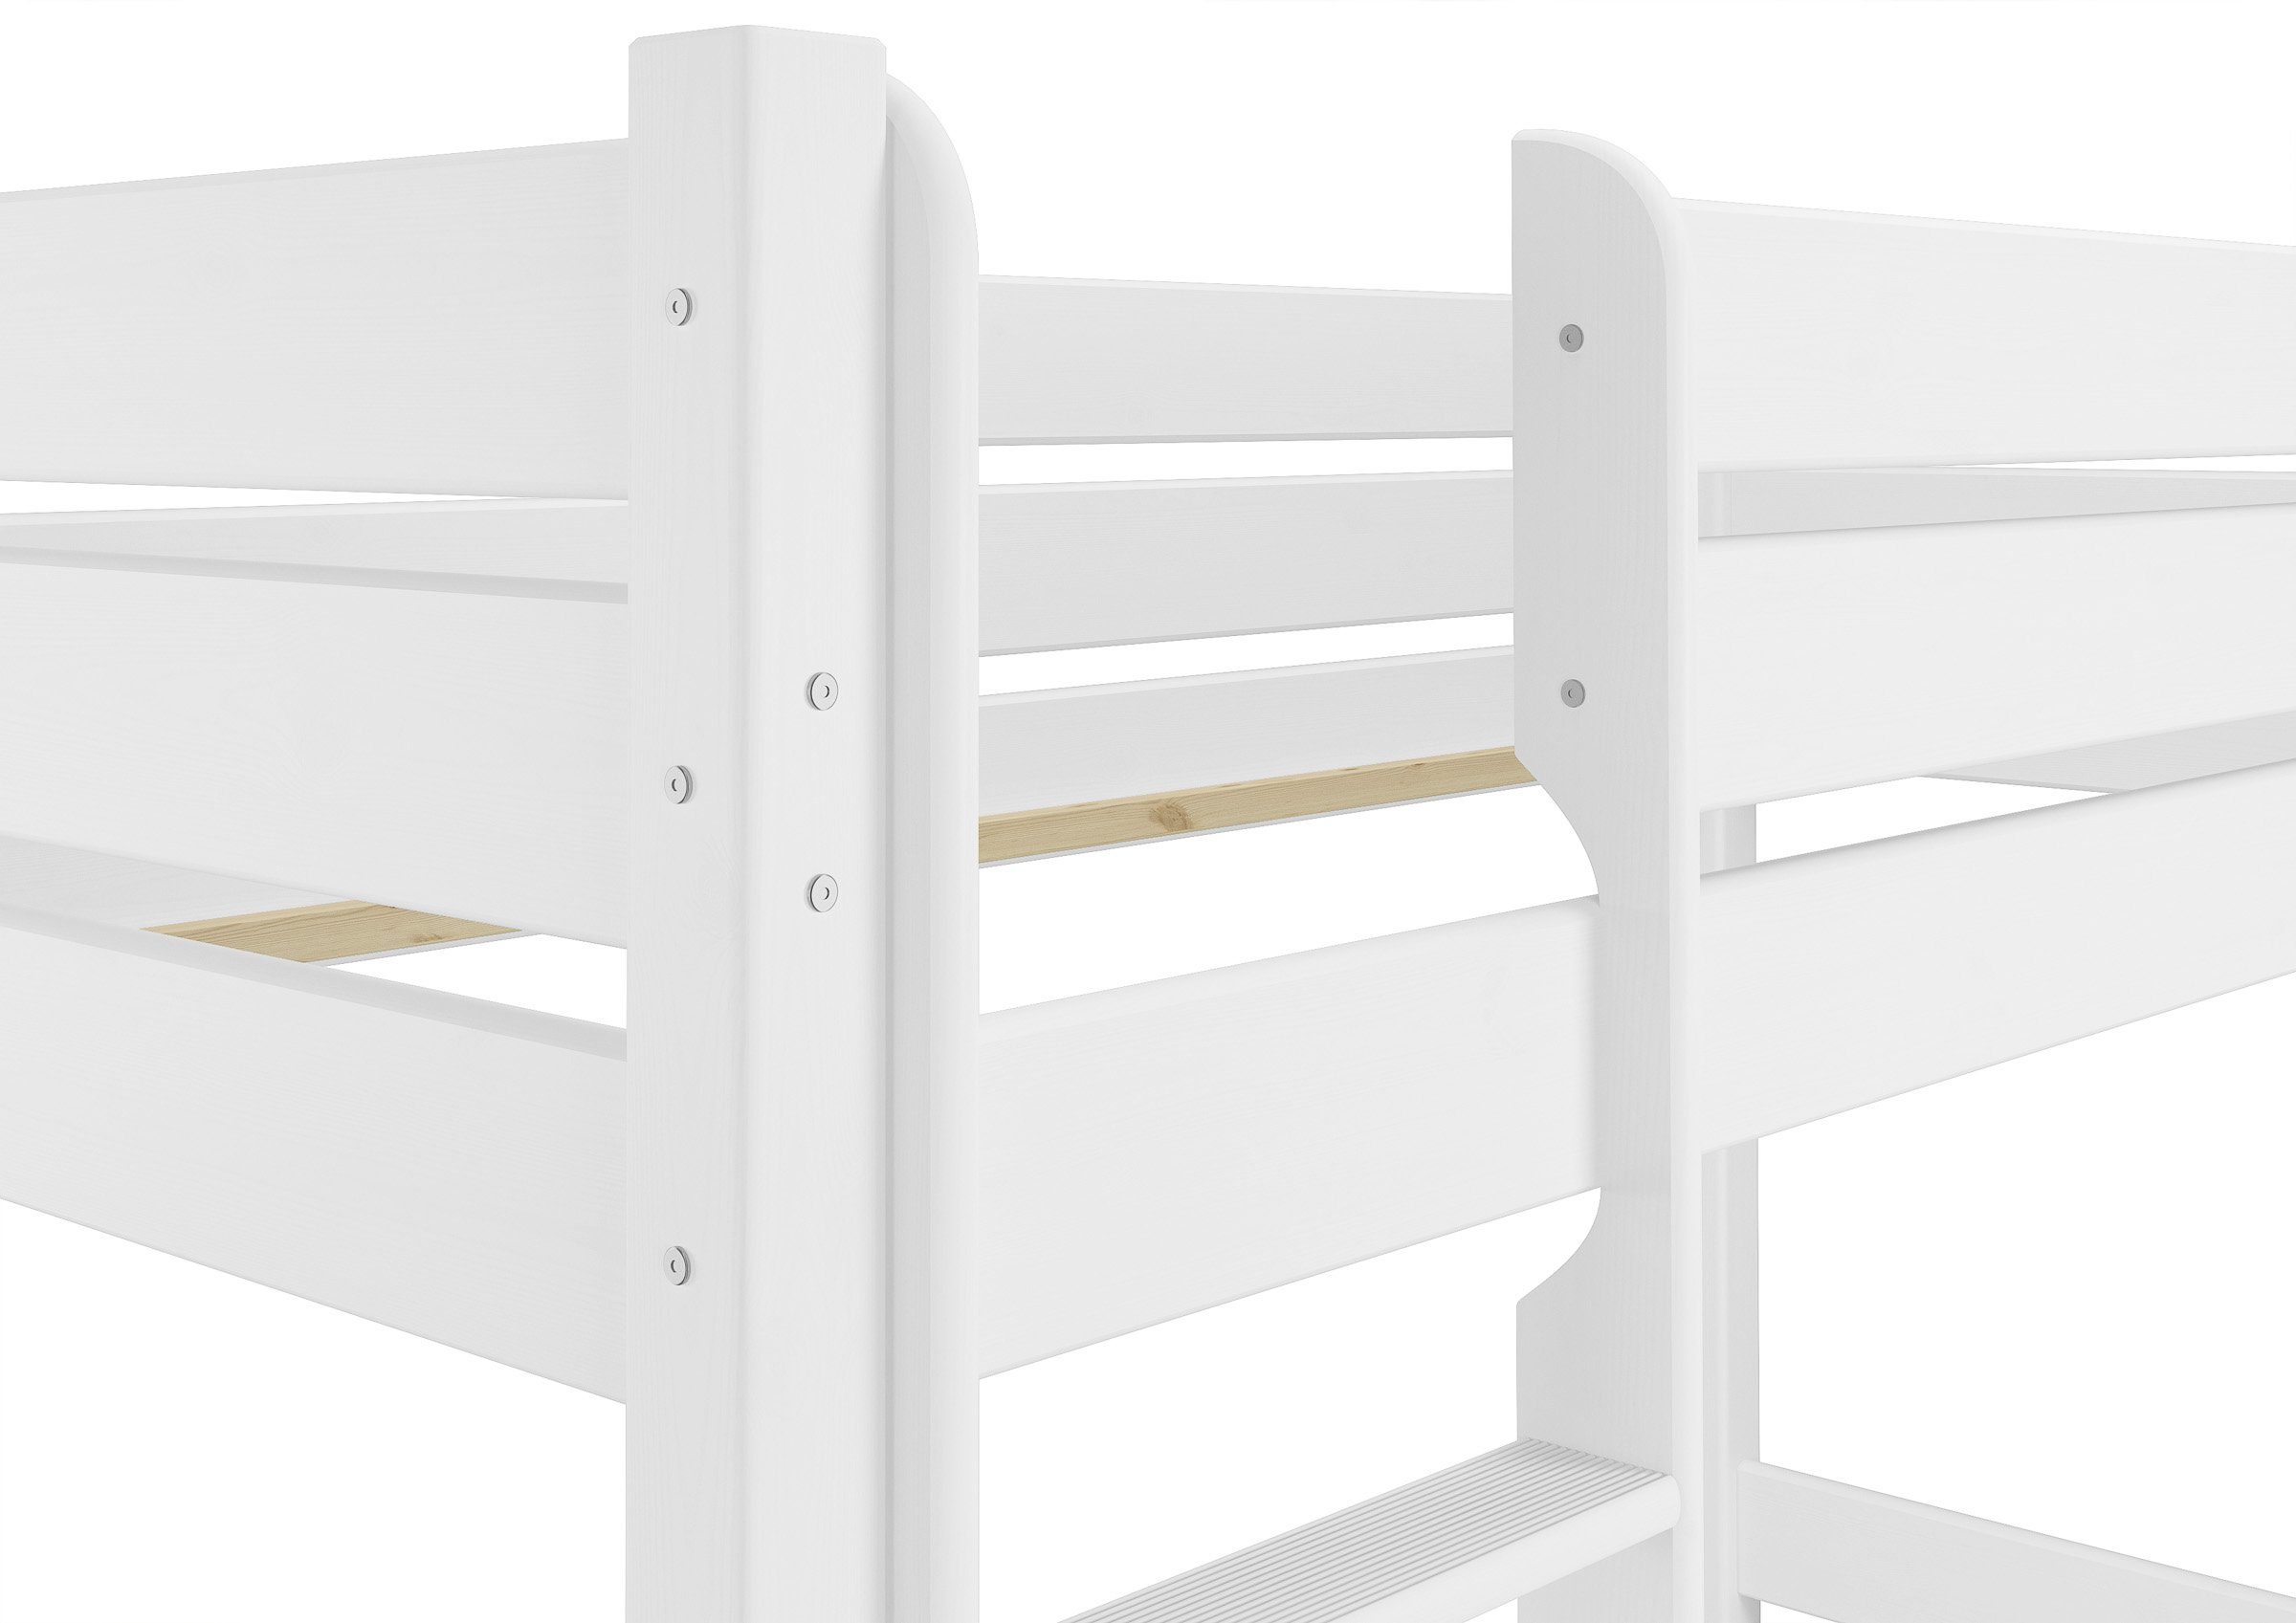 für Stockbett ERST-HOLZ Rollrost Bettkästen 90x200 lackiert Erwachsene weiß Etagenbett